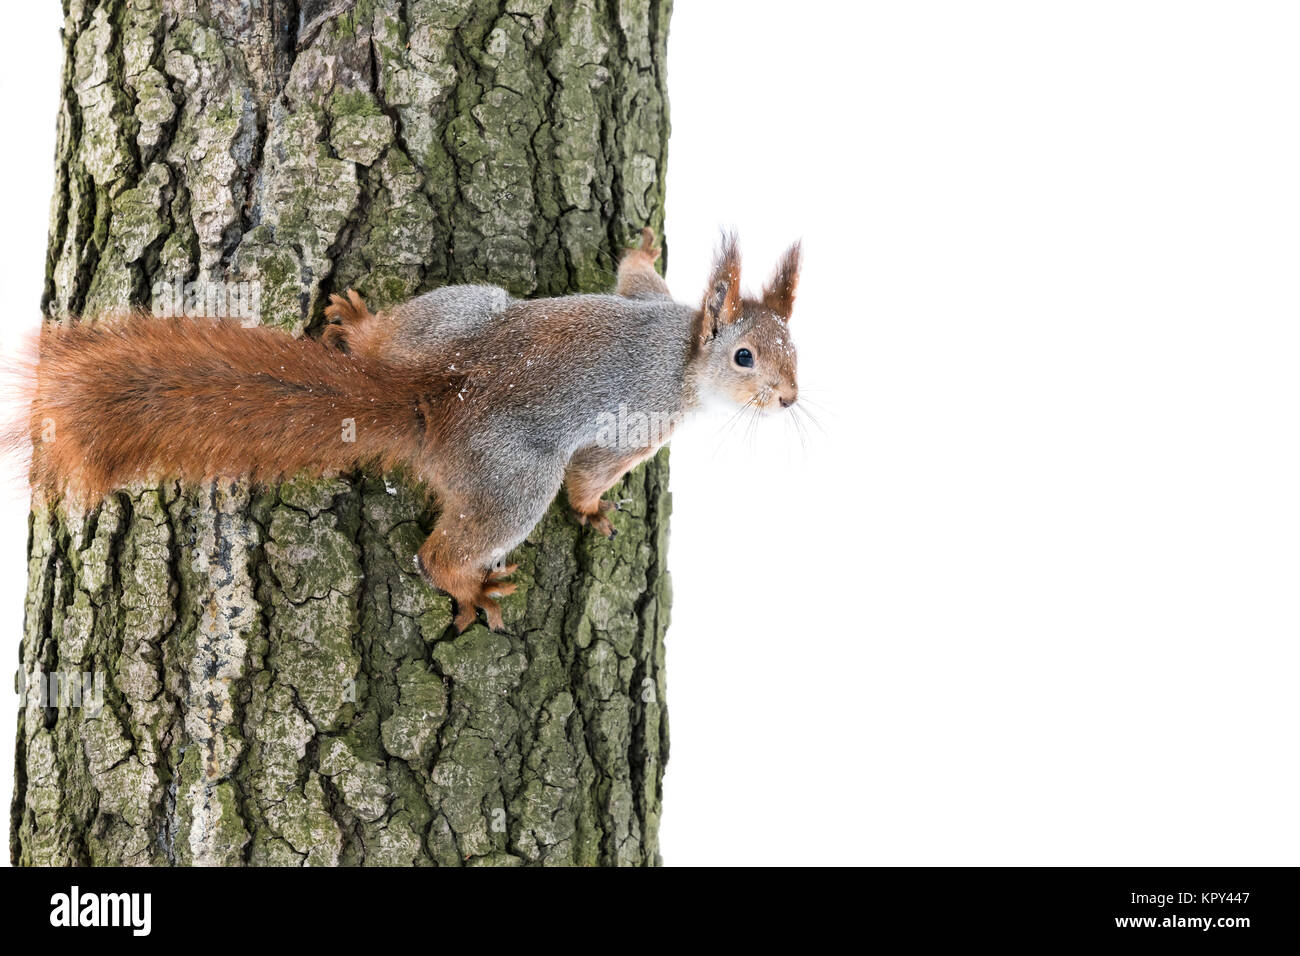 Curiosa ardilla roja con pieles suaves se asienta en el tronco del árbol y busca alimentos Foto de stock